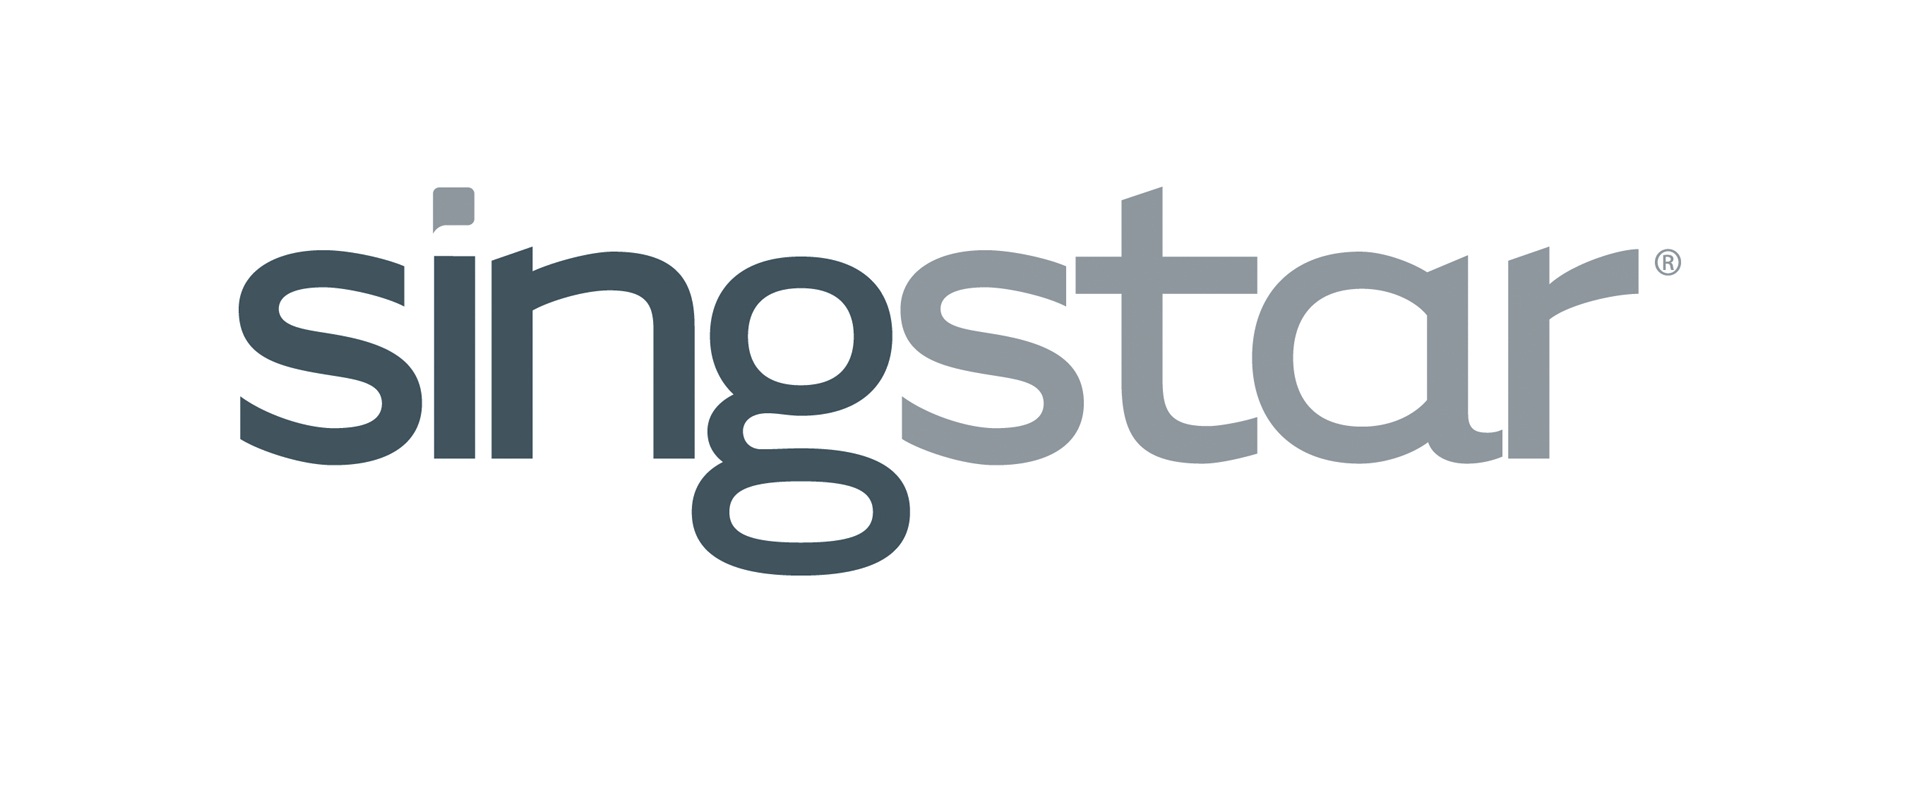 singstar-logo.jpg